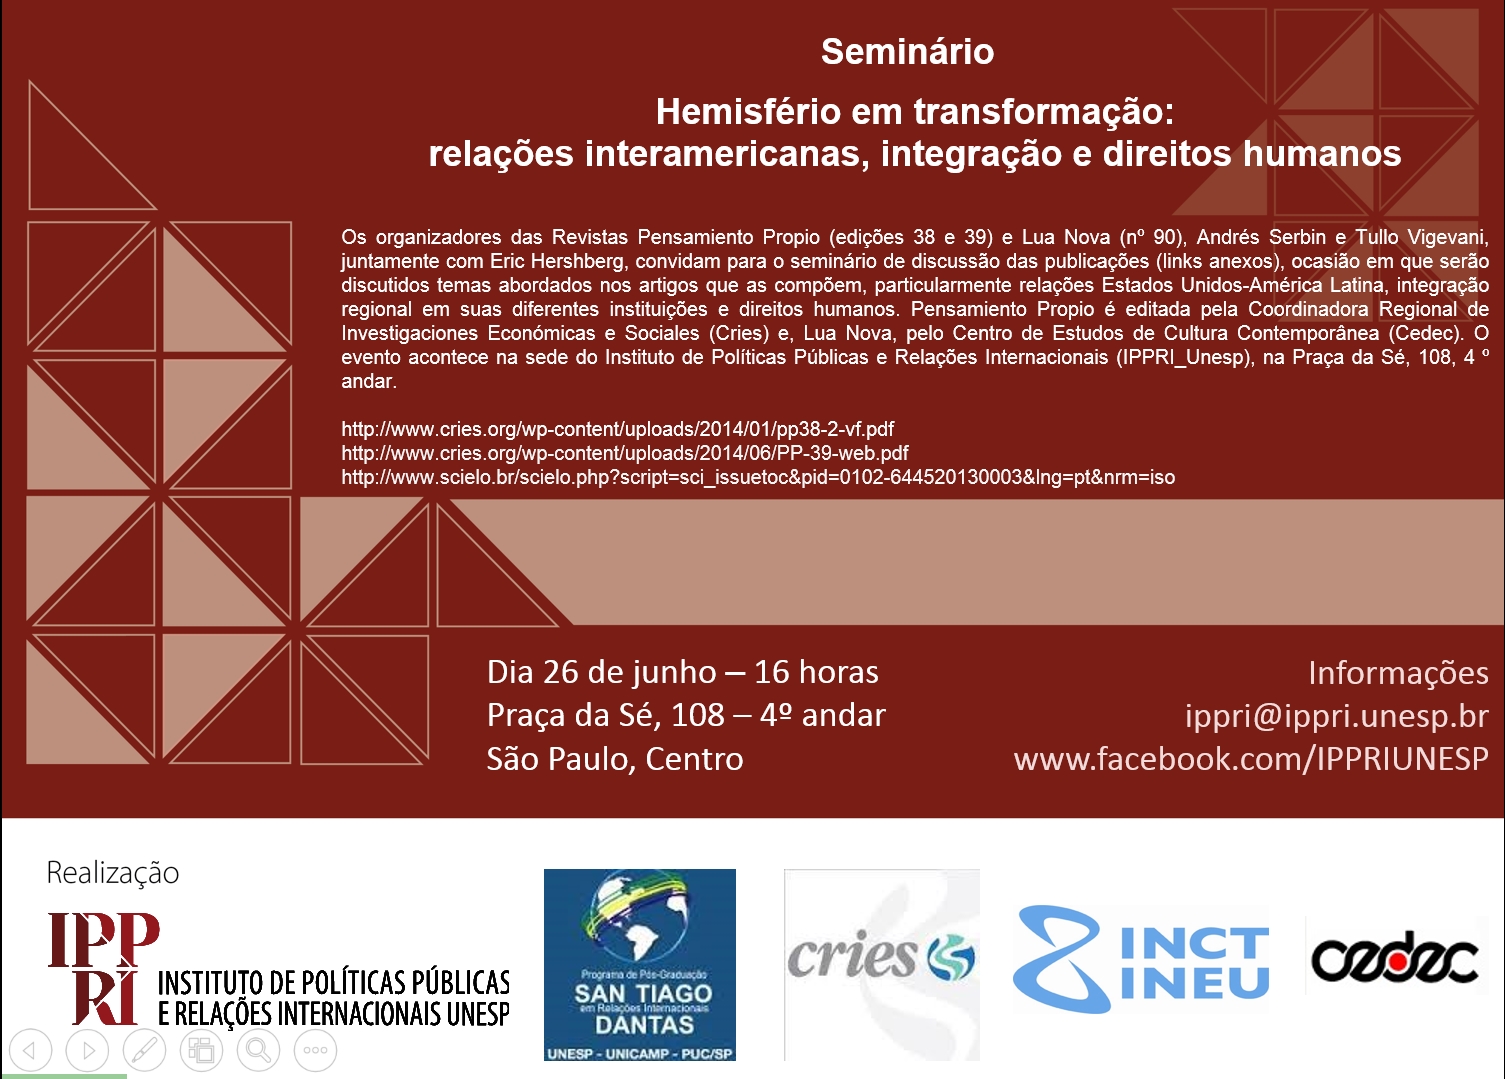 26 de junho – 16 horas – Hemisfério em transformação: relações interamericanas, integração e direitos humanos